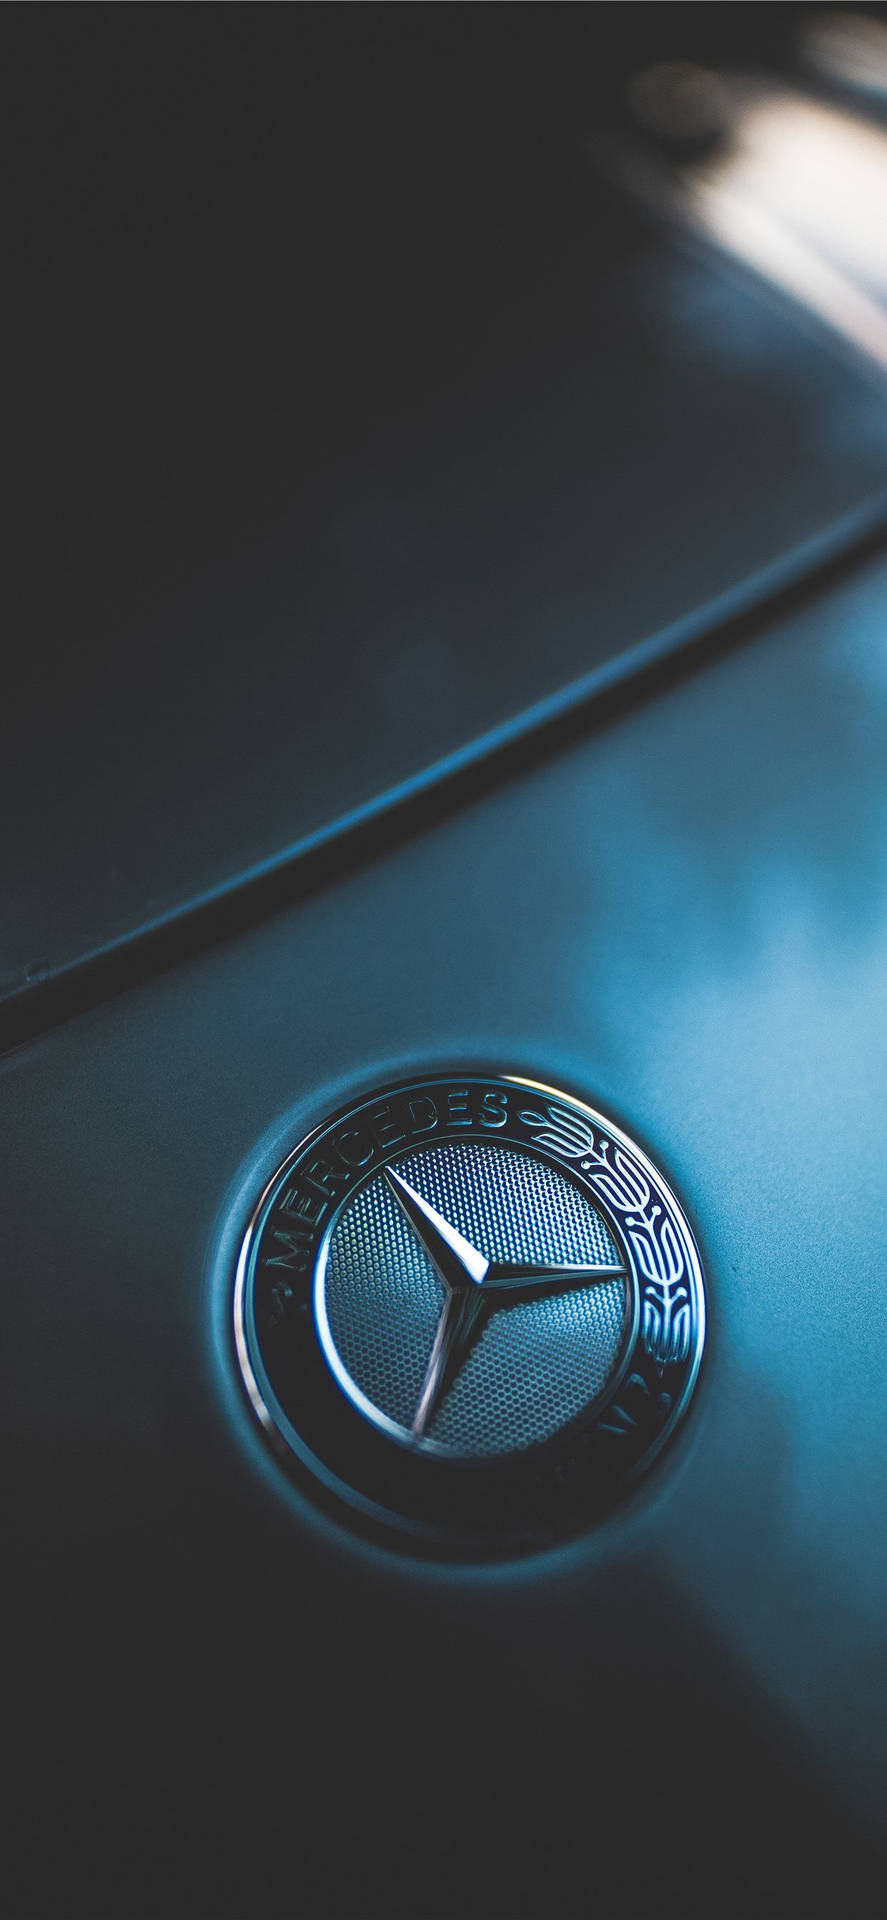 Mercedes Benz Blå Emblem Iphone Wallpaper